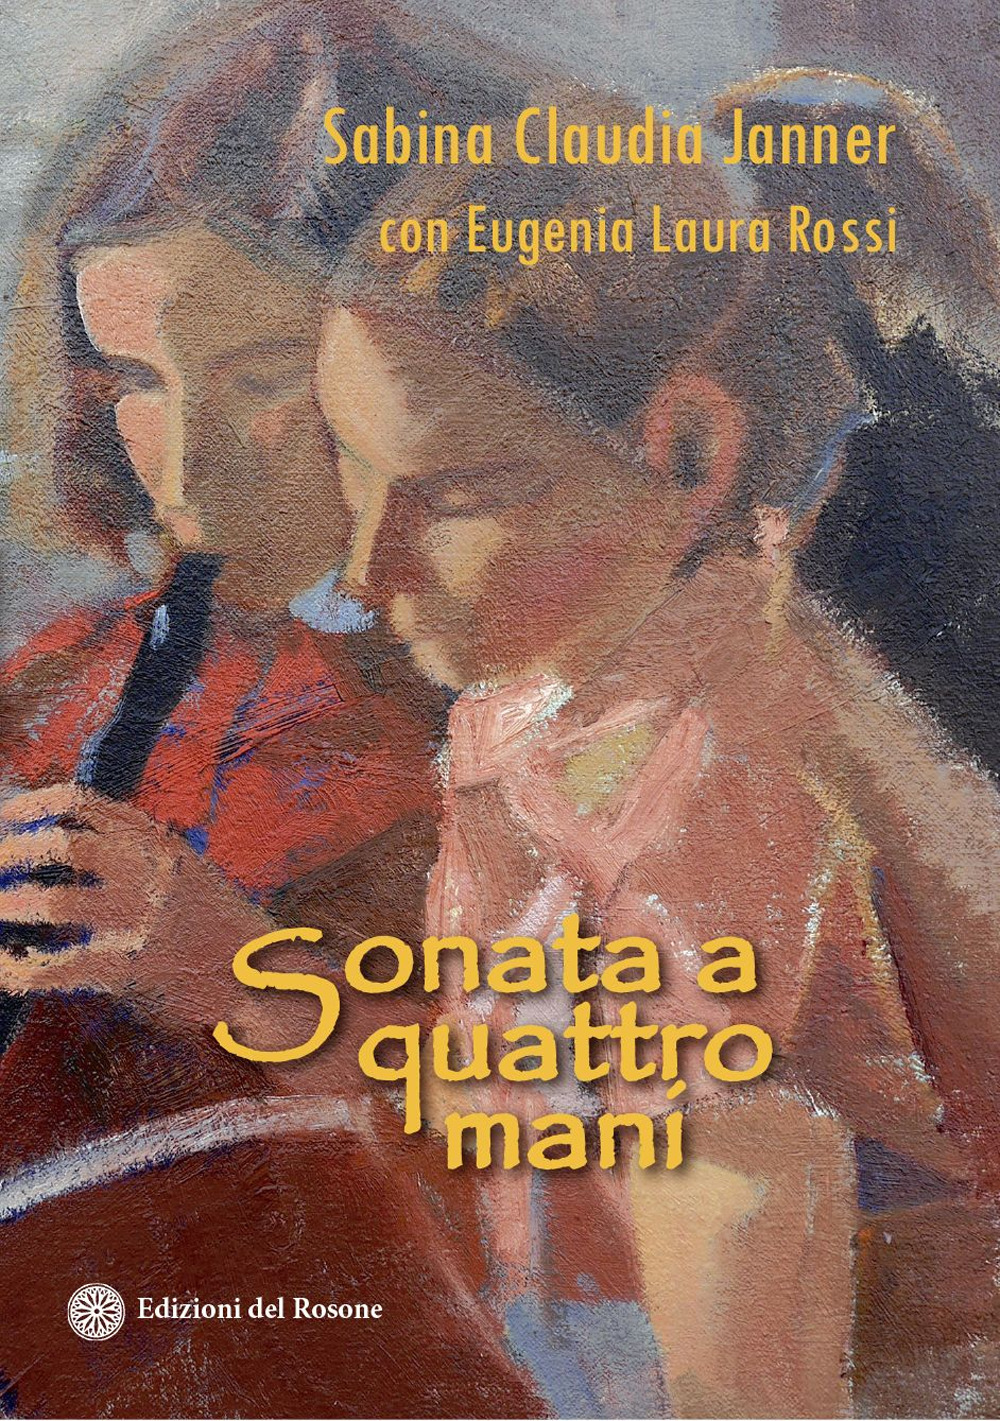 Image of Sonata a quattro mani